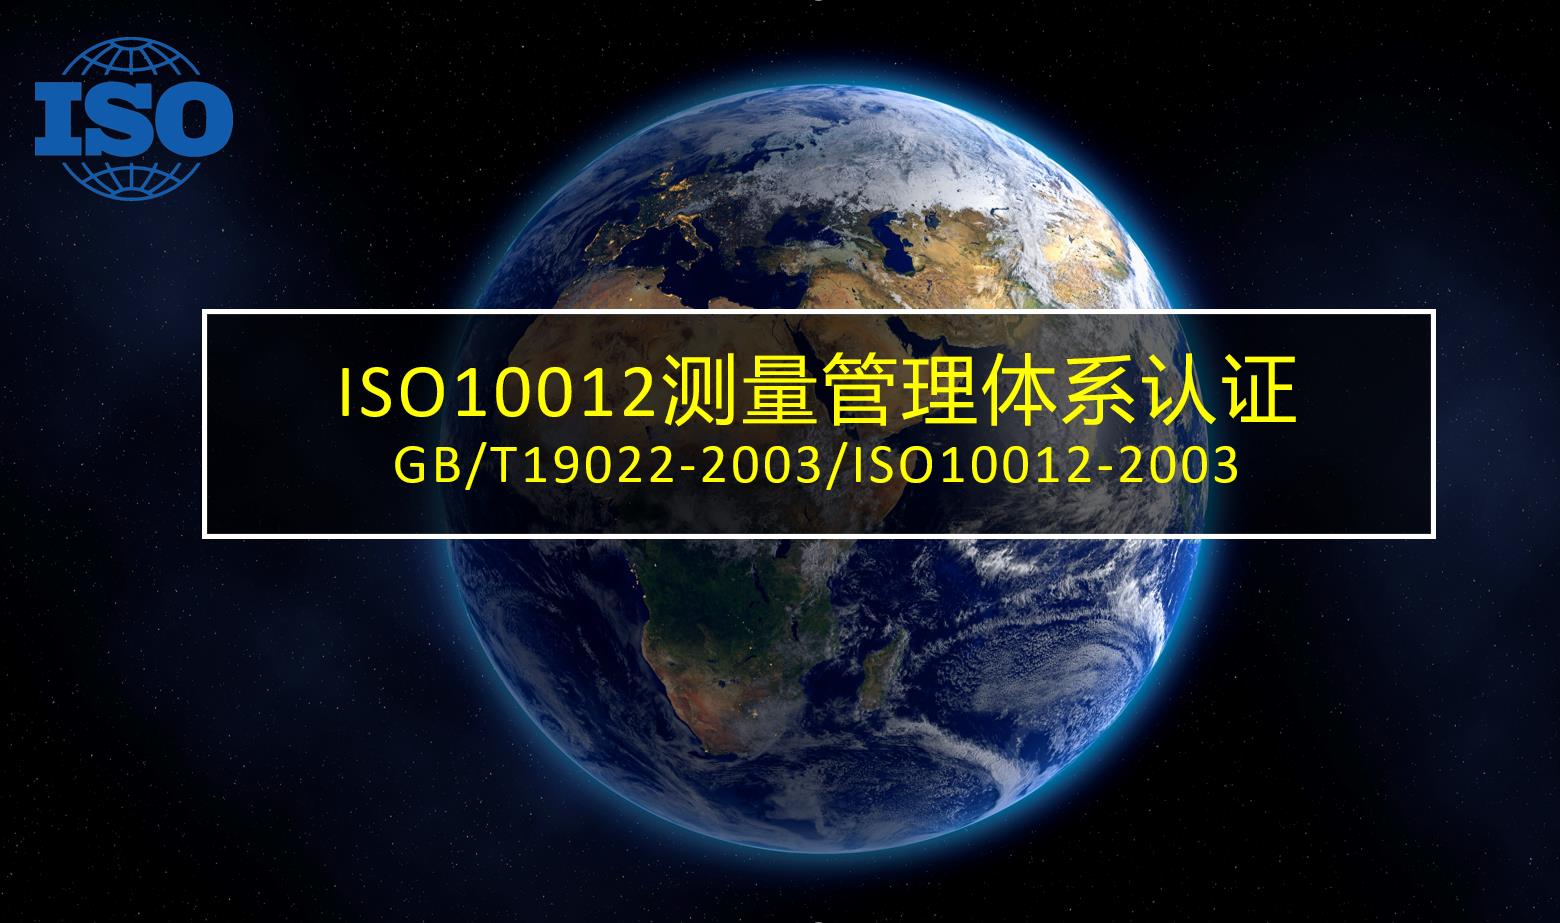 山东ISO10012测量管理体系咨询辅导